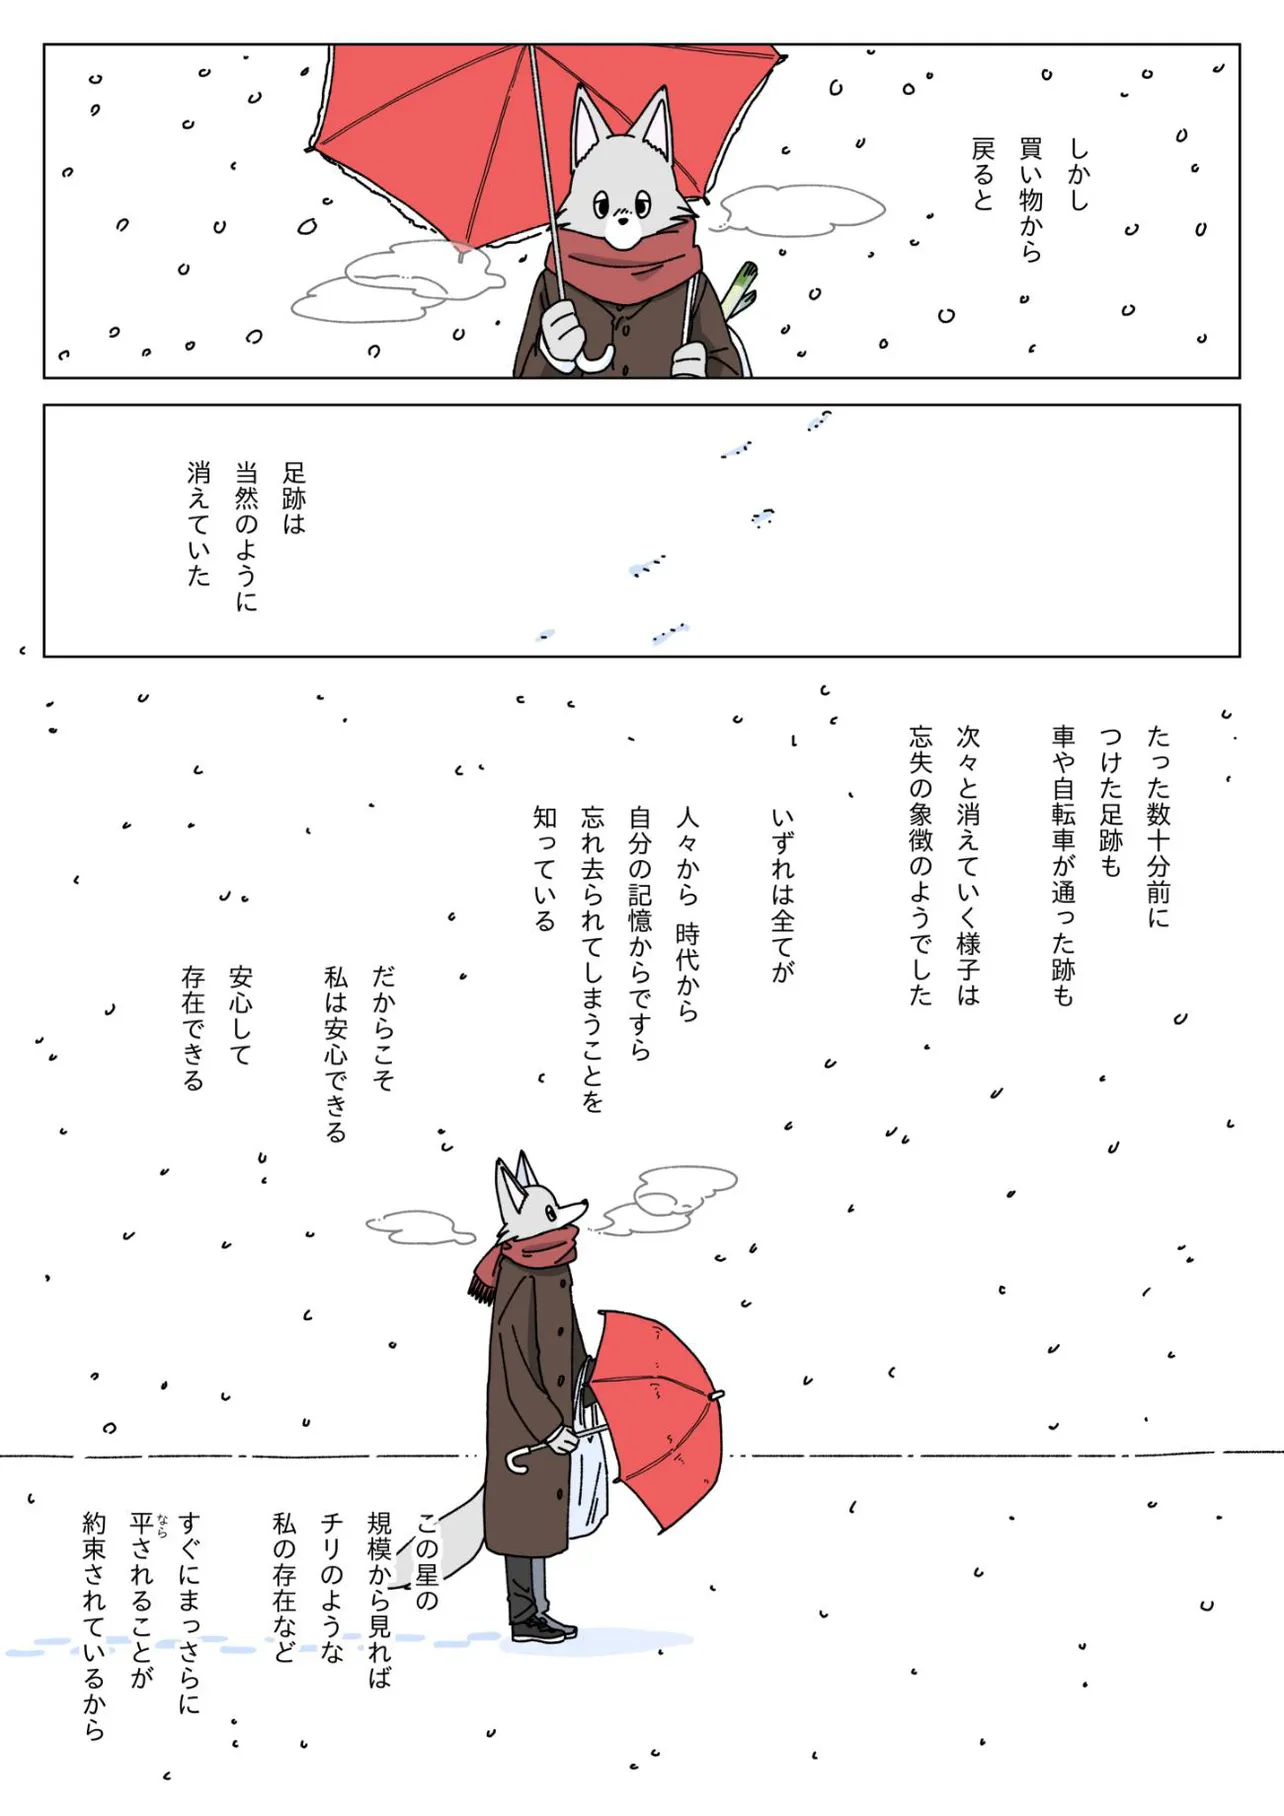 『大雪の日に豆腐を食べる話』(11／12)